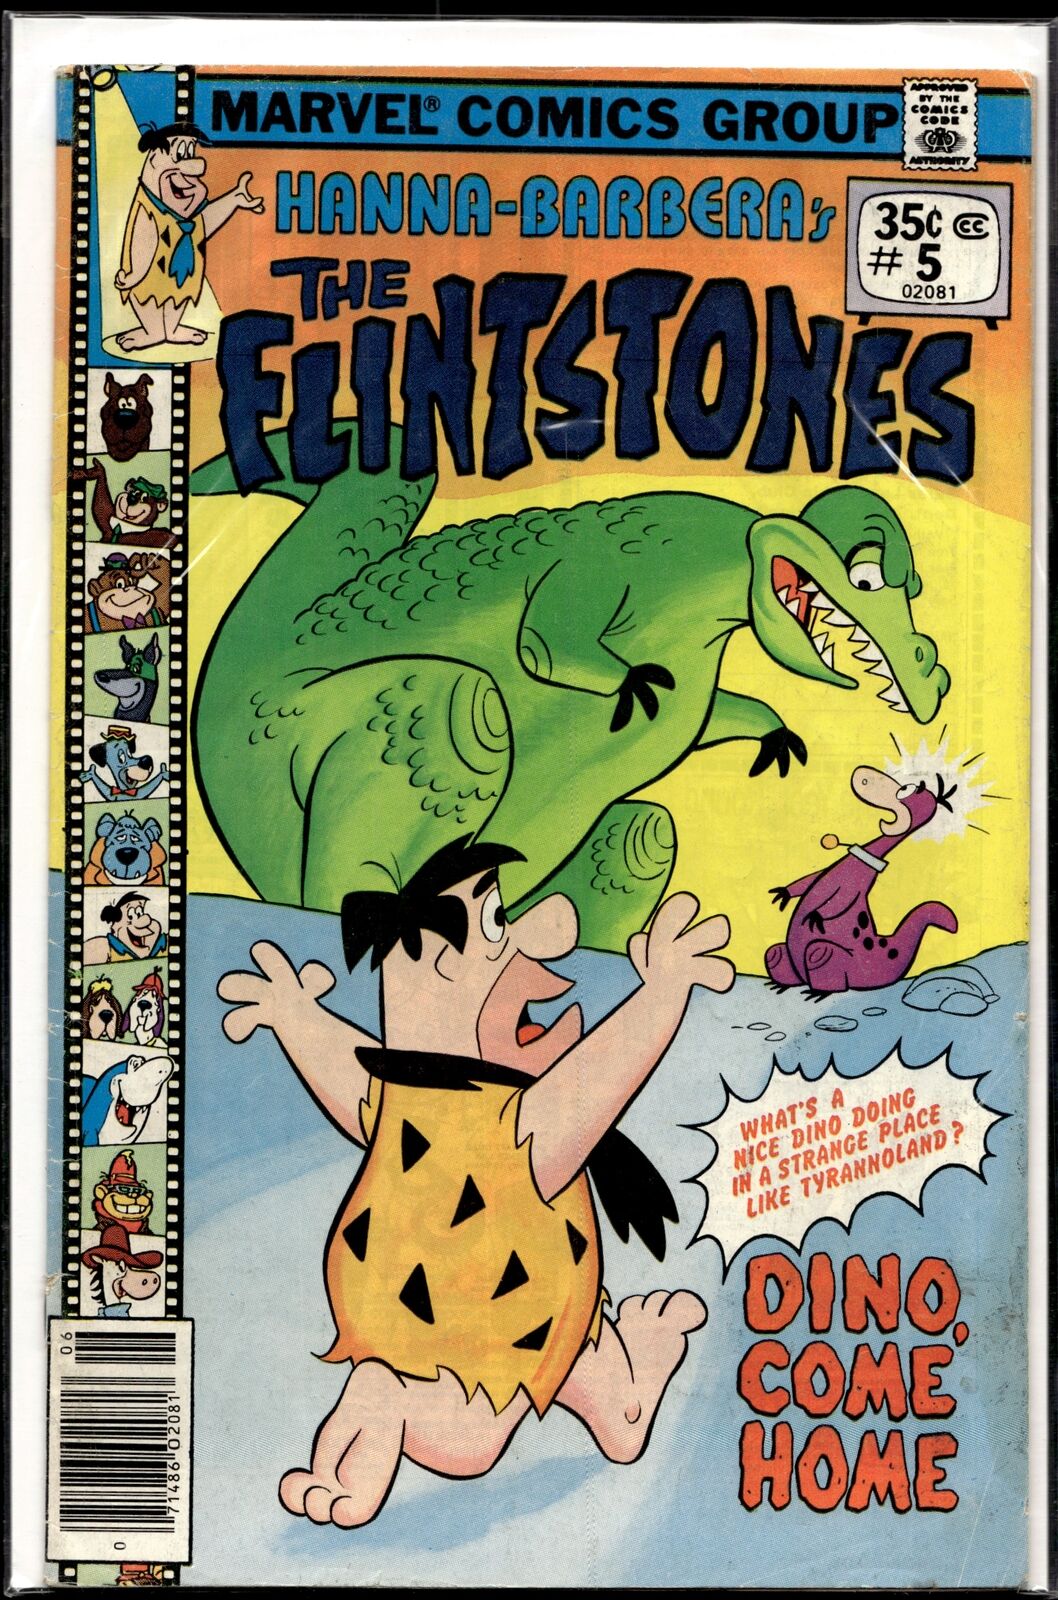 1979 Hanna-Barbera's The Flinstones #5 Marvel Comic